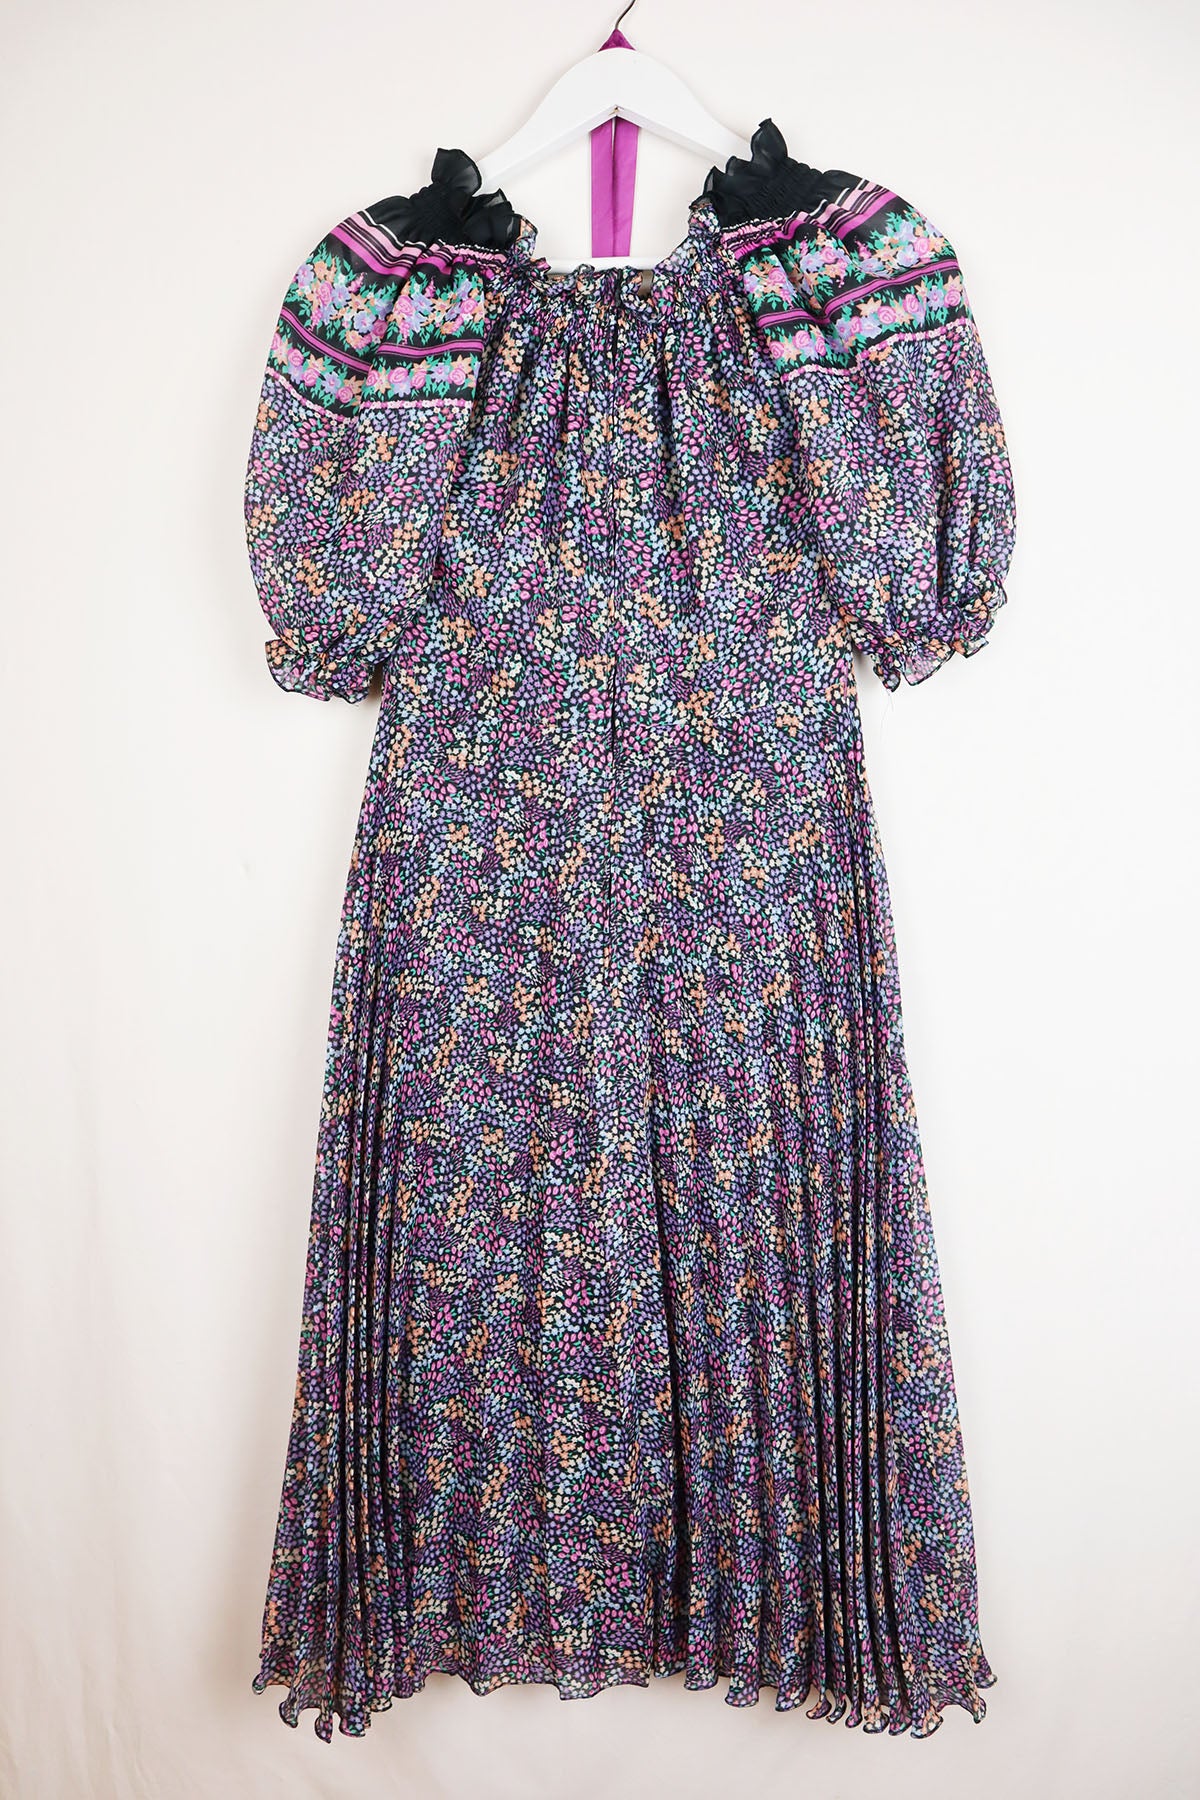 Kleid Vintage Blumen Carmen-Ausschnitt ( Gr. XS/S )